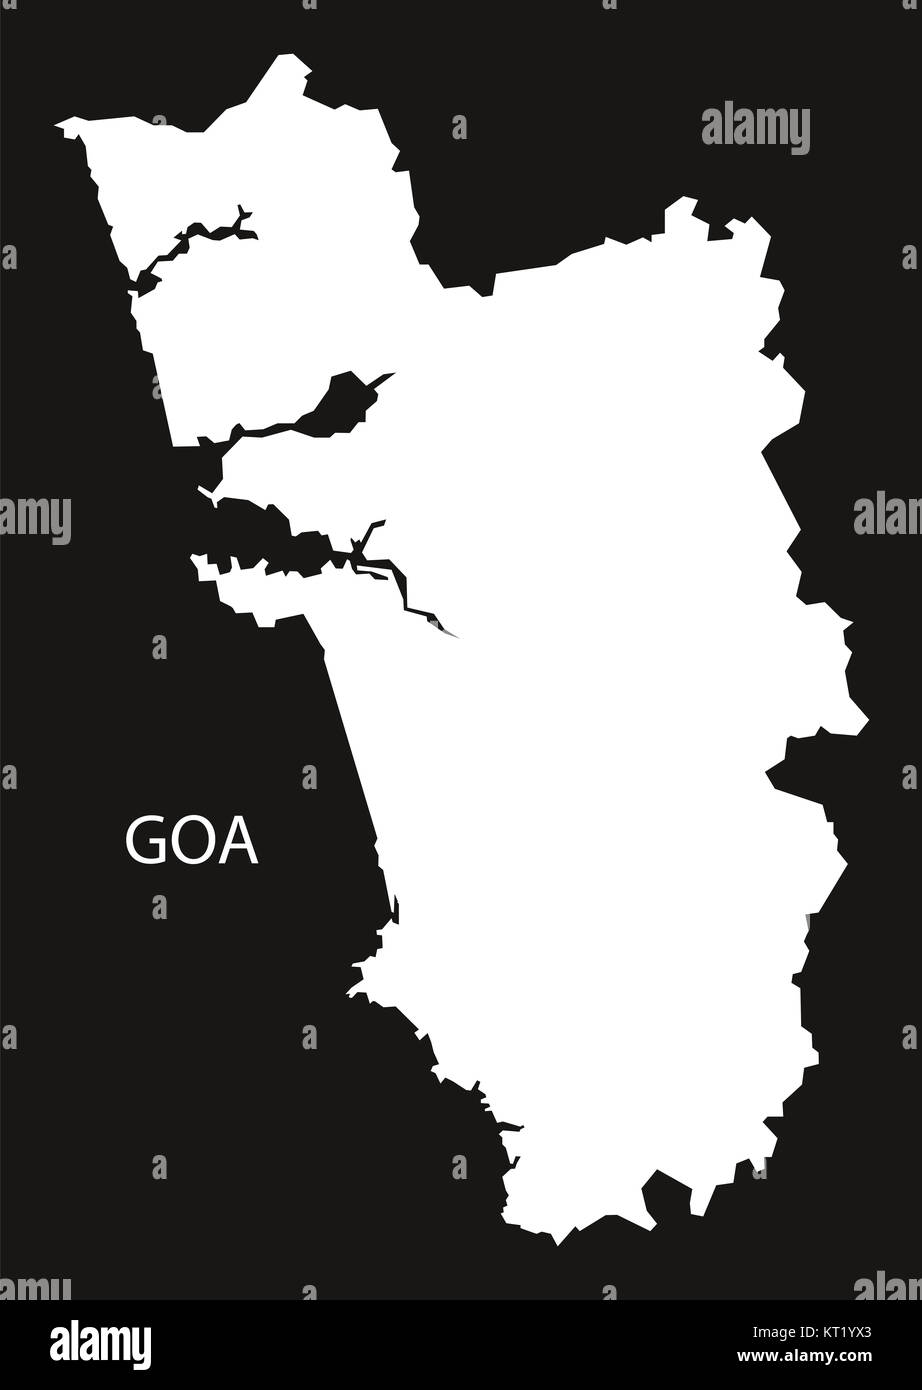 Goa India Map black inverted Stock Photo